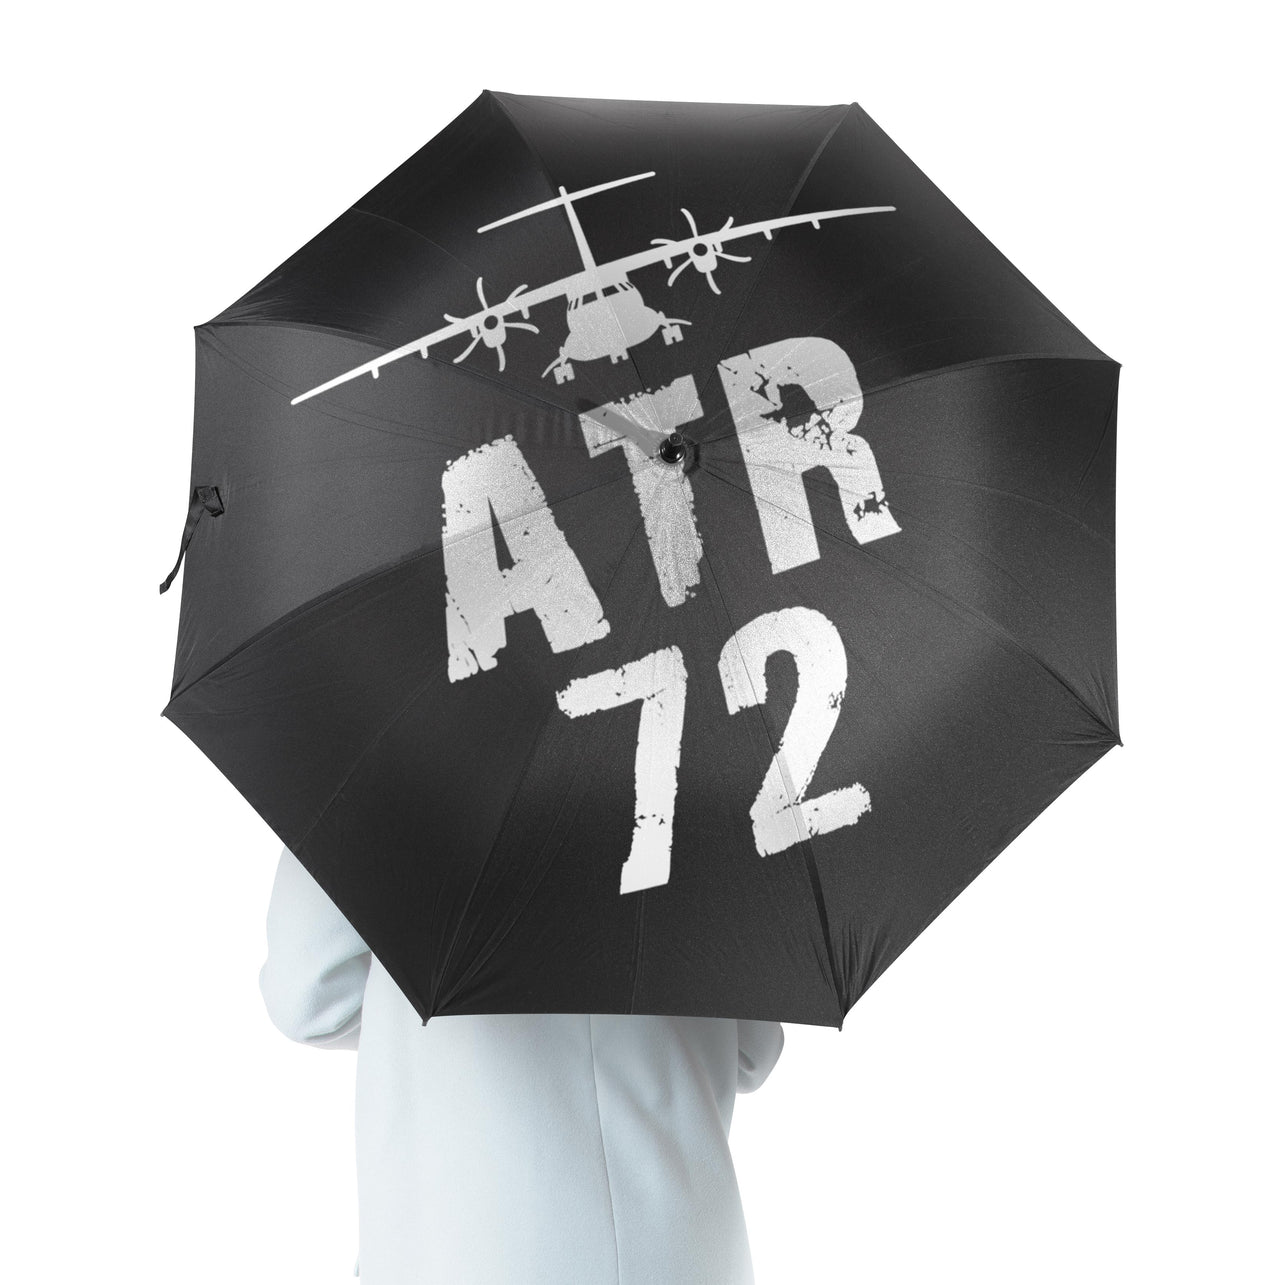 ATR-72 & Plane Designed Umbrella